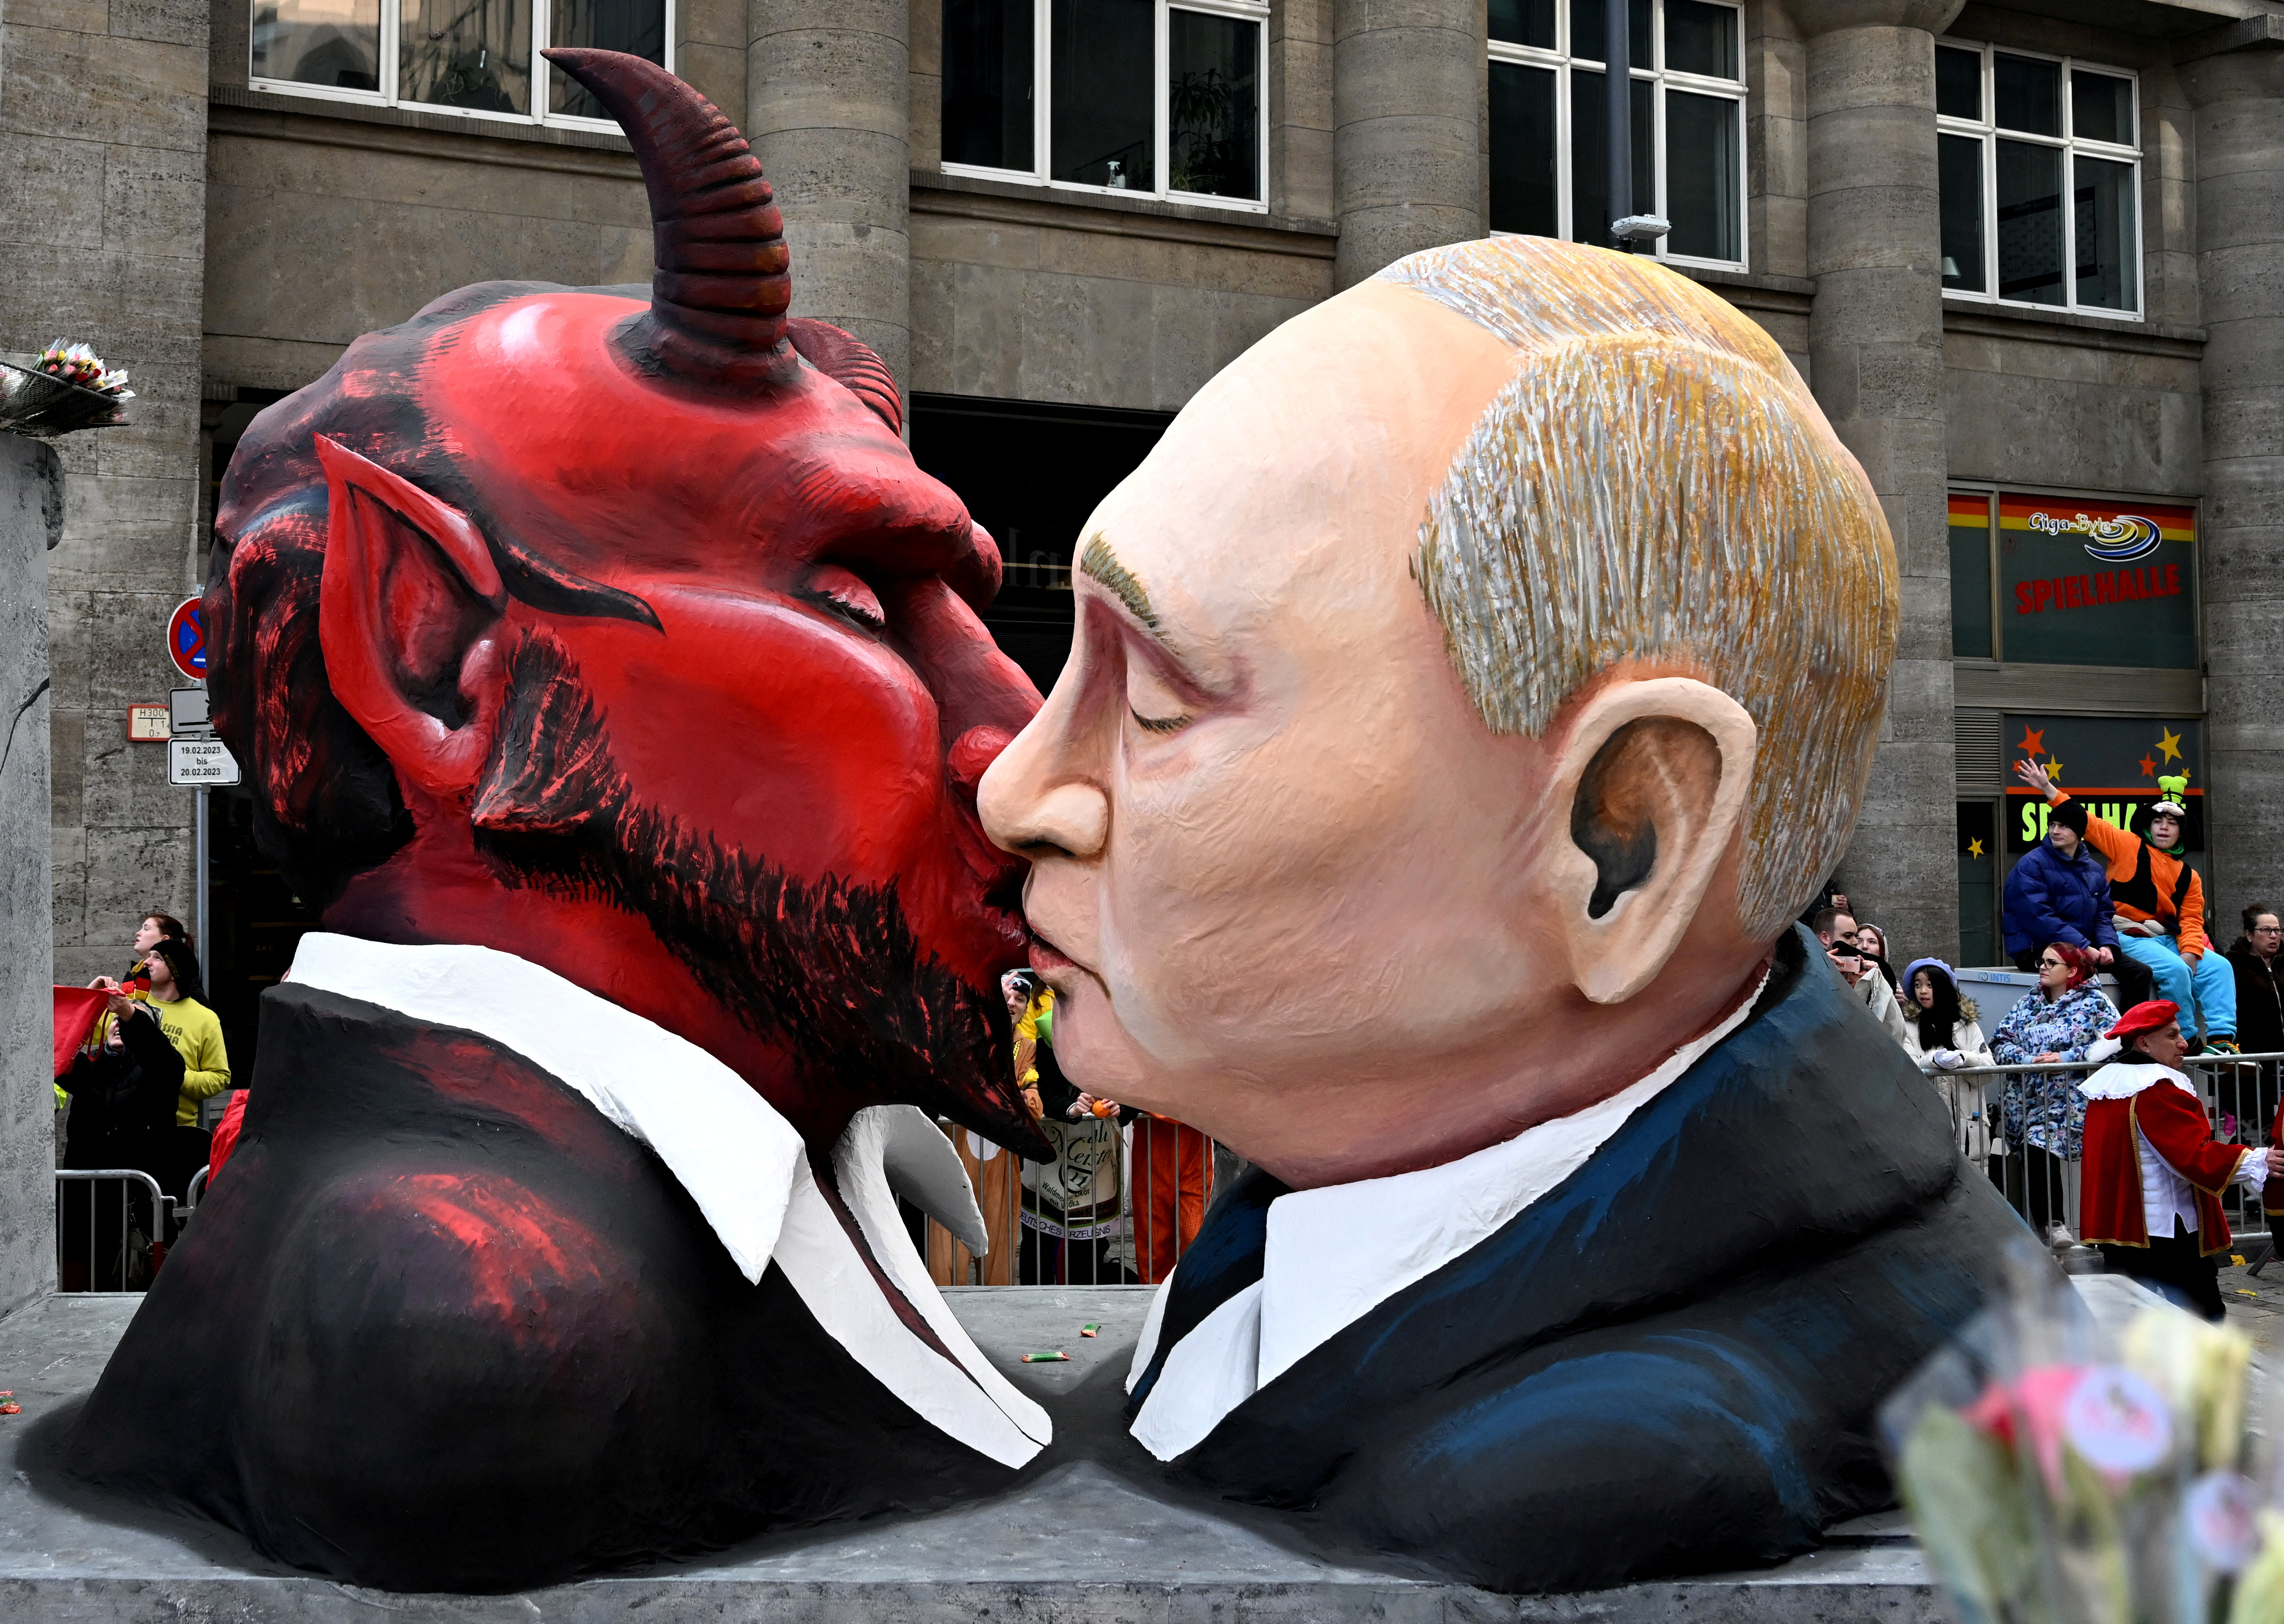 Vladimir Putin besando al diablo en una carrosa del carnaval de Colonia, Alemania (REUTERS/Jana Rodenbusch)